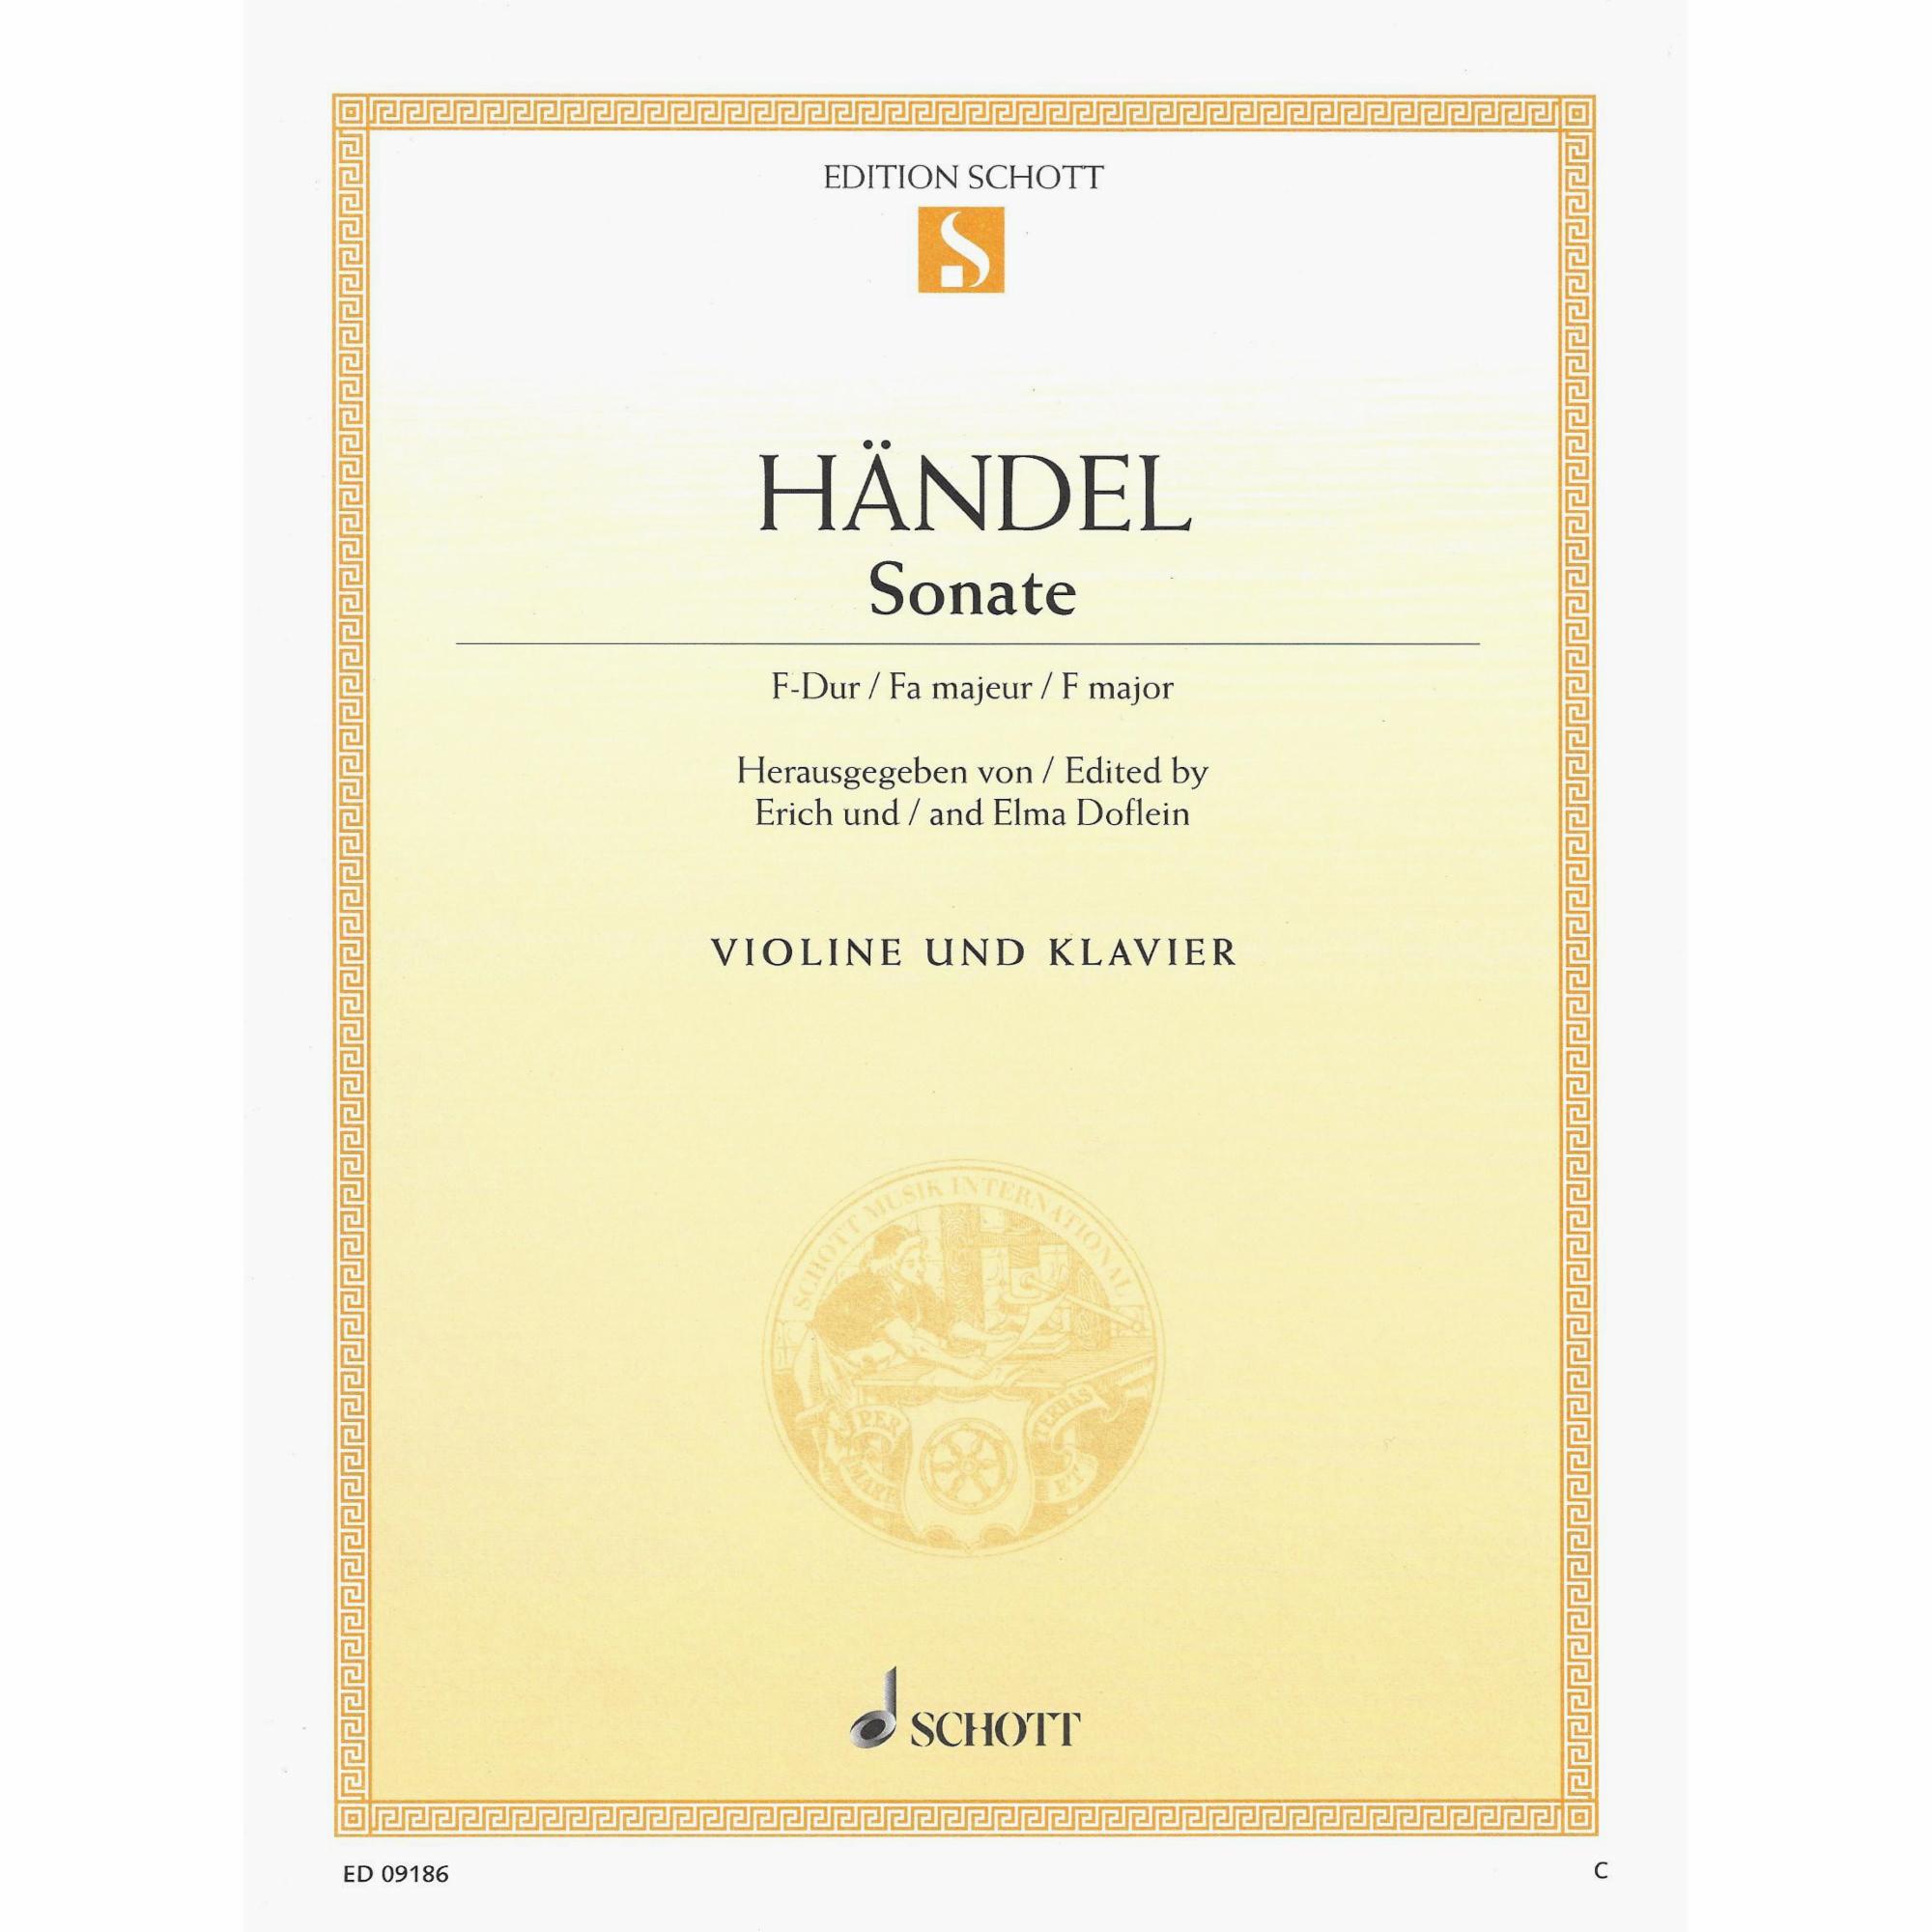 Handel -- Sonata in F Major for Violin and Piano